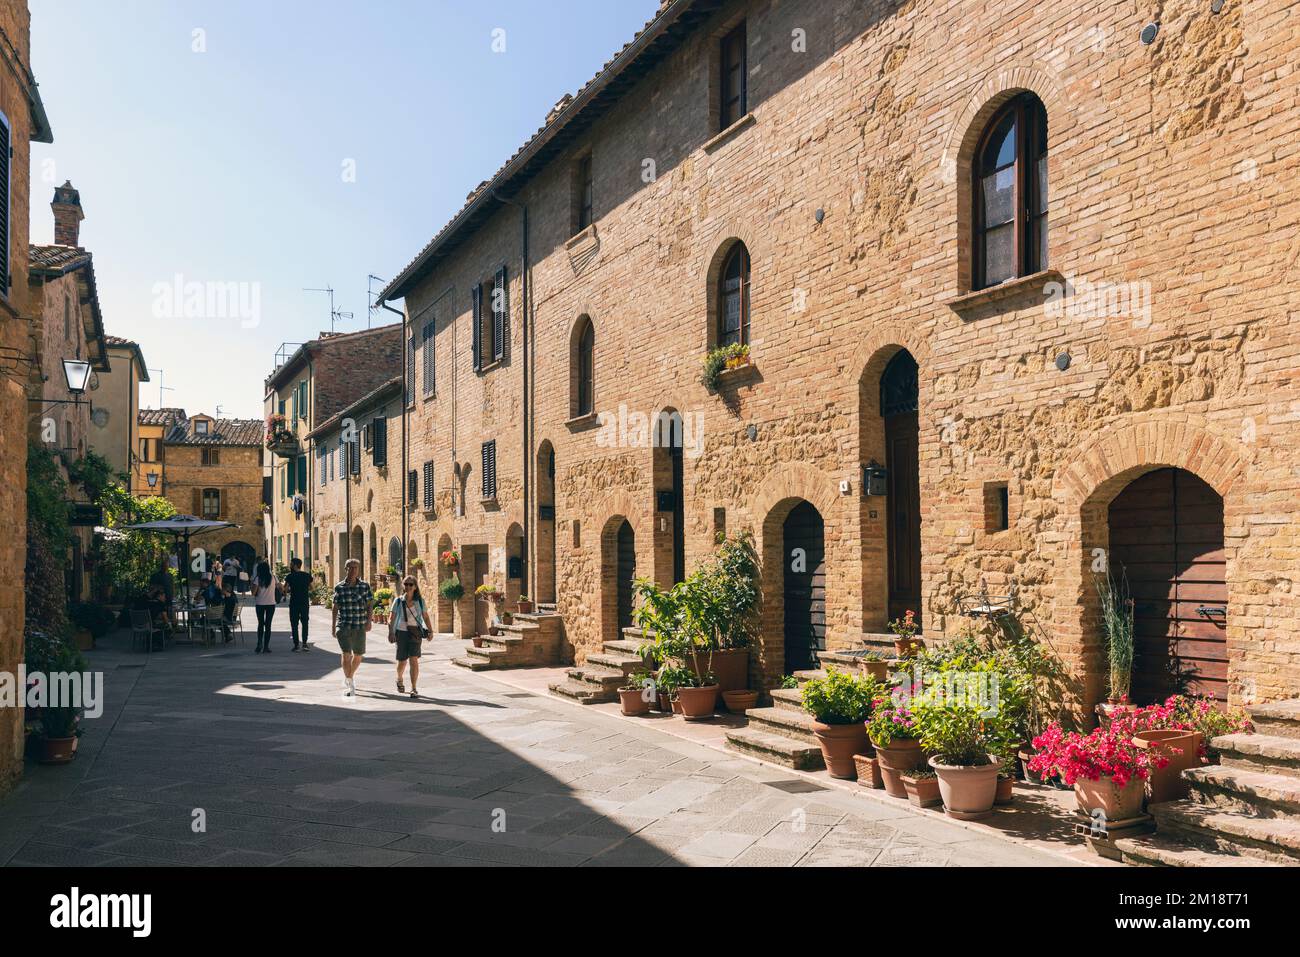 Pienza, province de Sienne, Toscane, Italie. Via case Nuove. Scène de rue typique. Pienza est un site classé au patrimoine mondial de l'UNESCO. Banque D'Images